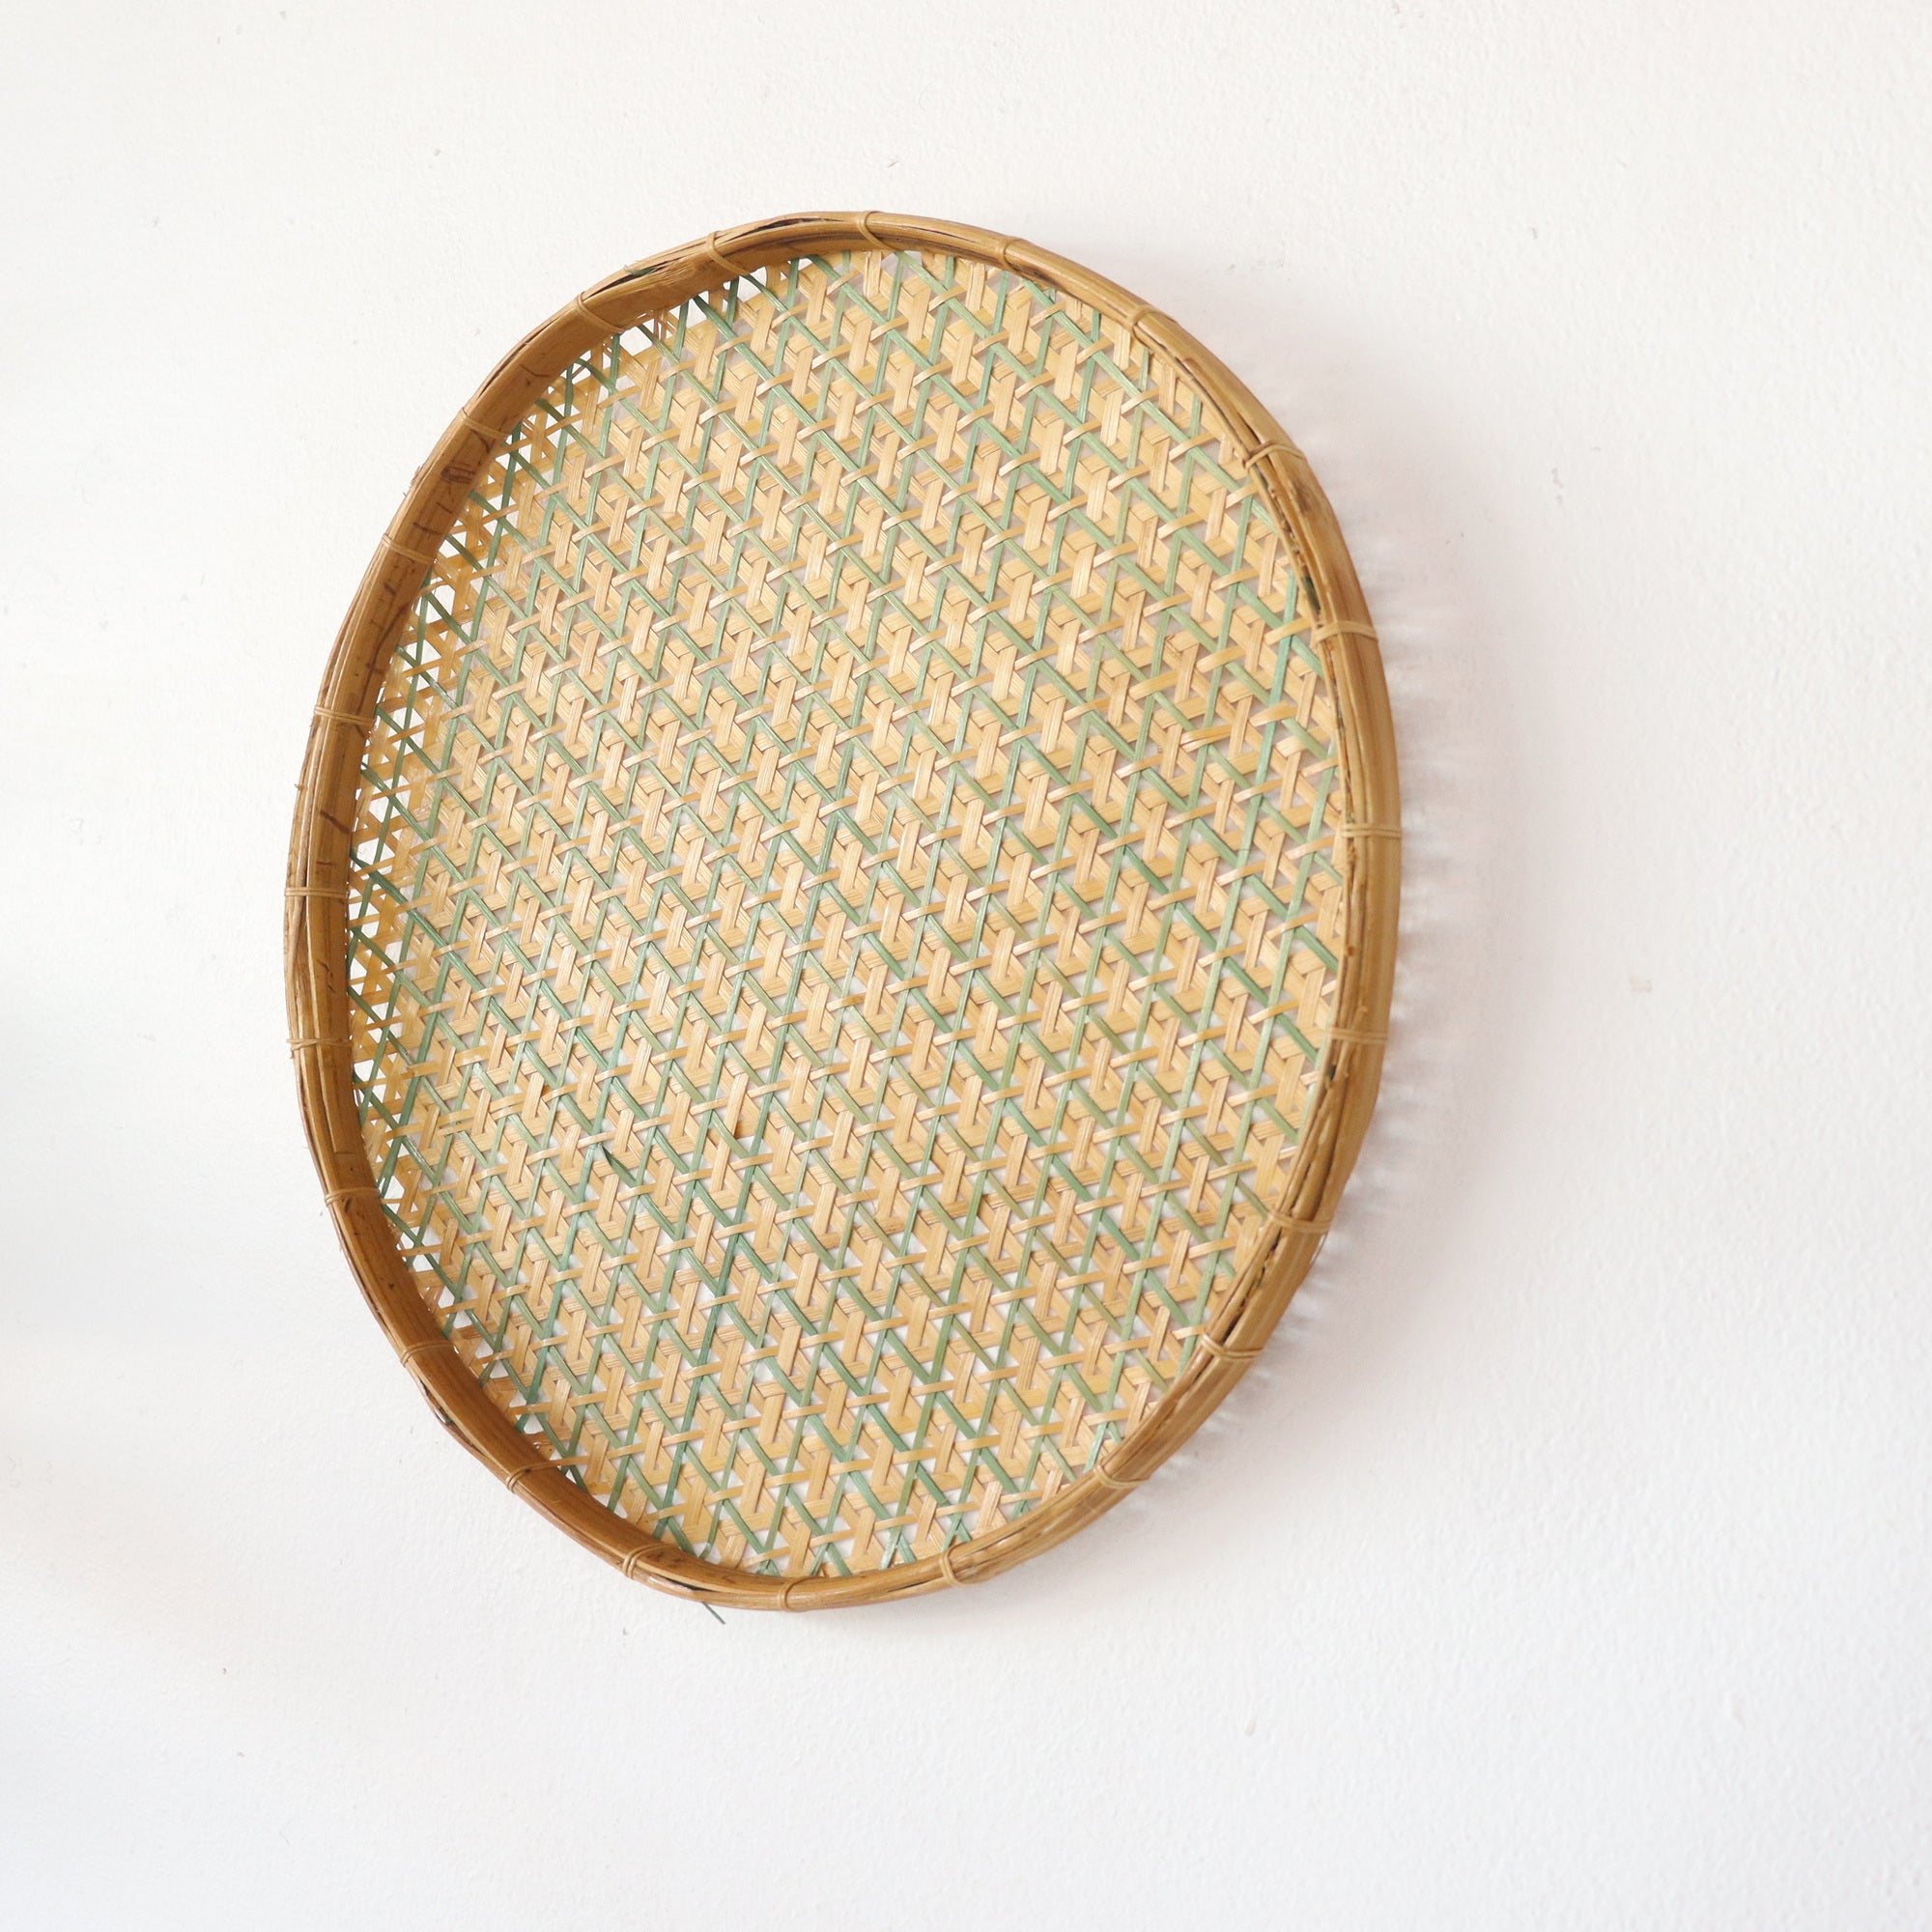 PHOM CHA NOK - DIY Wall Art Basket Decor 14 inches